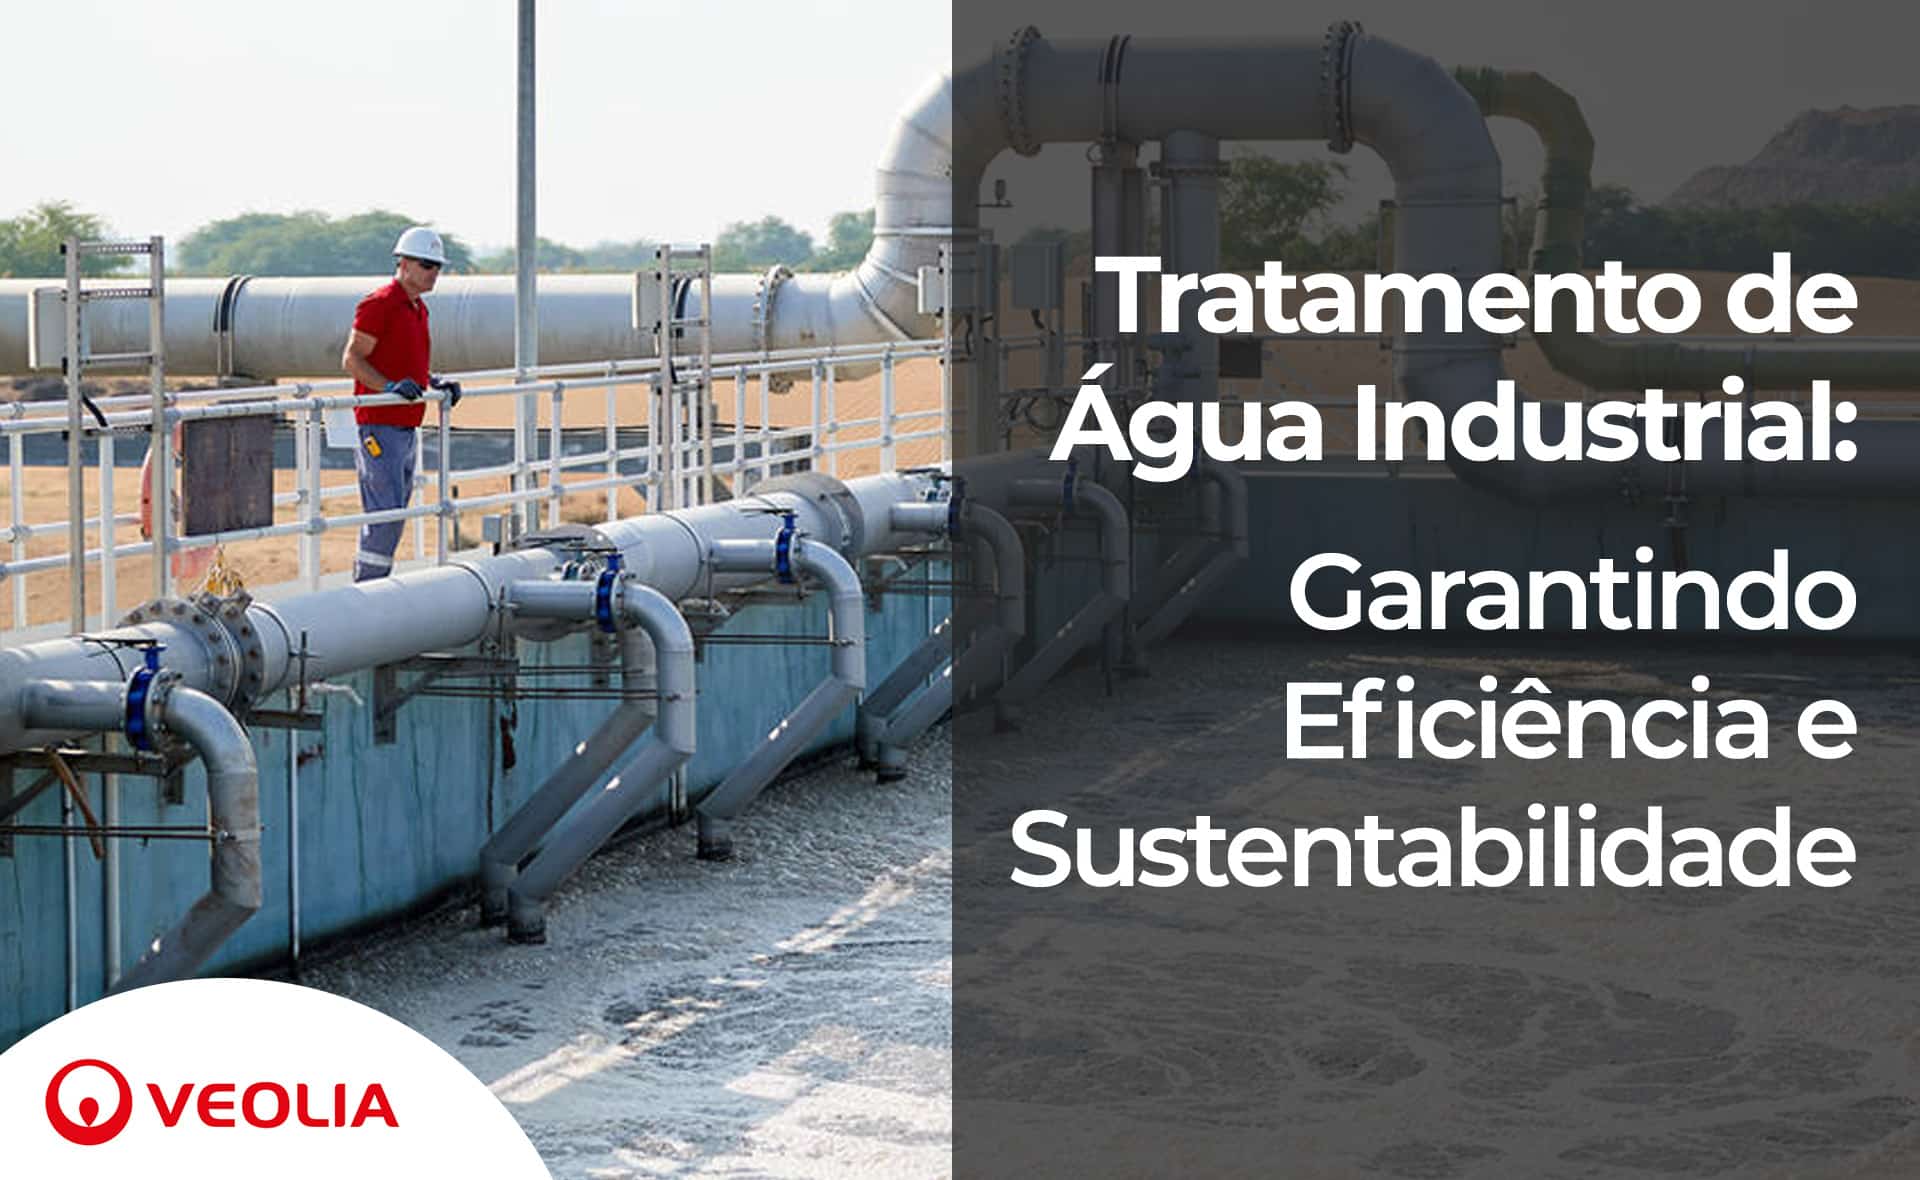 Tratamento de Água Industrial: Garantindo Eficiência e Sustentabilidade